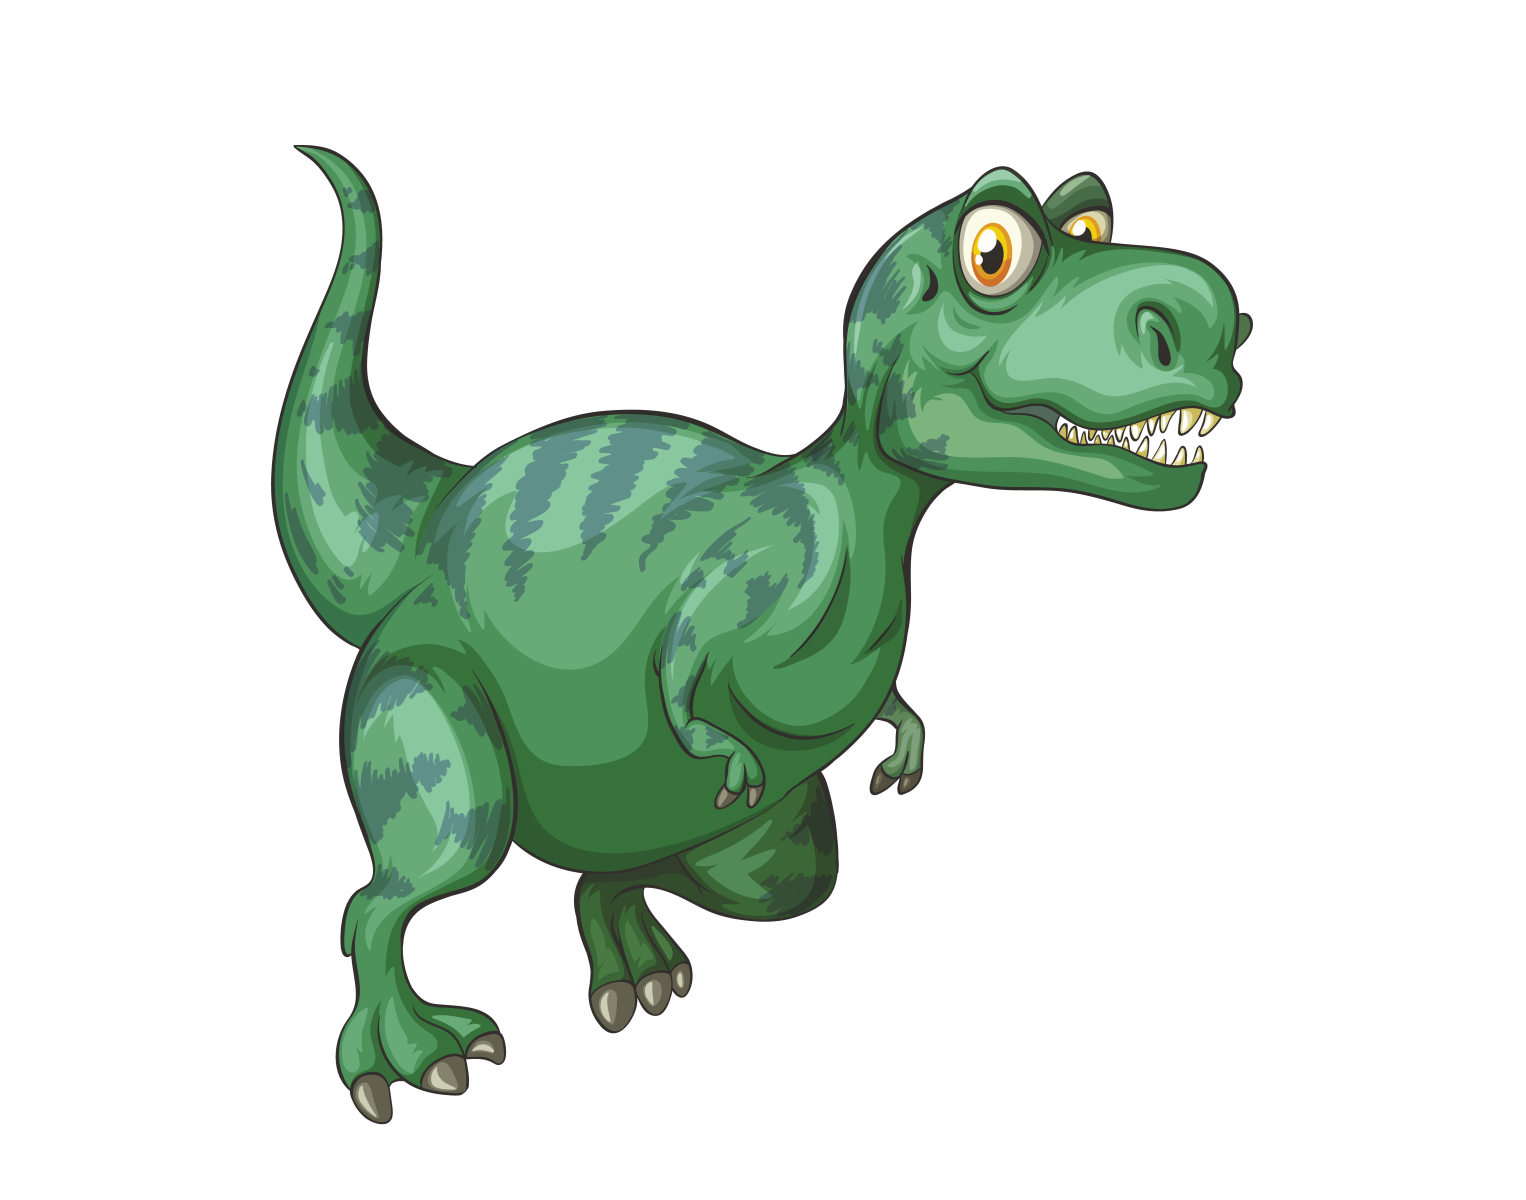 T-rex Dinosaur Animation Vector by DigitEMB on Dribbble